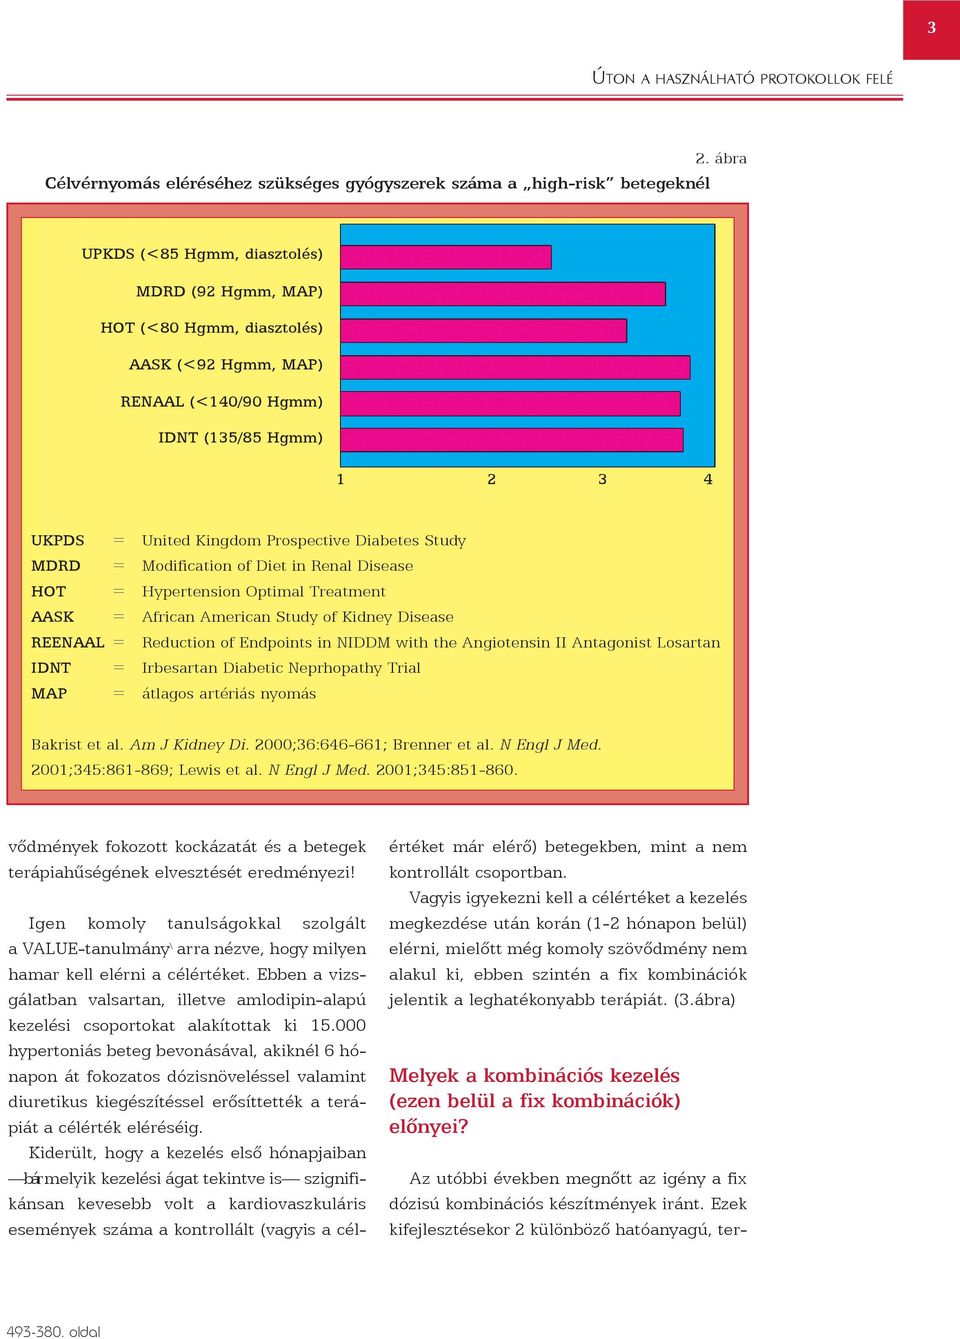 Kidney Disease REENAAL = Reduction of Endpoints in NIDDM with the Angiotensin II Antagonist Losartan IDNT = Irbesartan Diabetic Neprhopathy Trial MAP = átlagos artériás nyomás Bakrist et al.